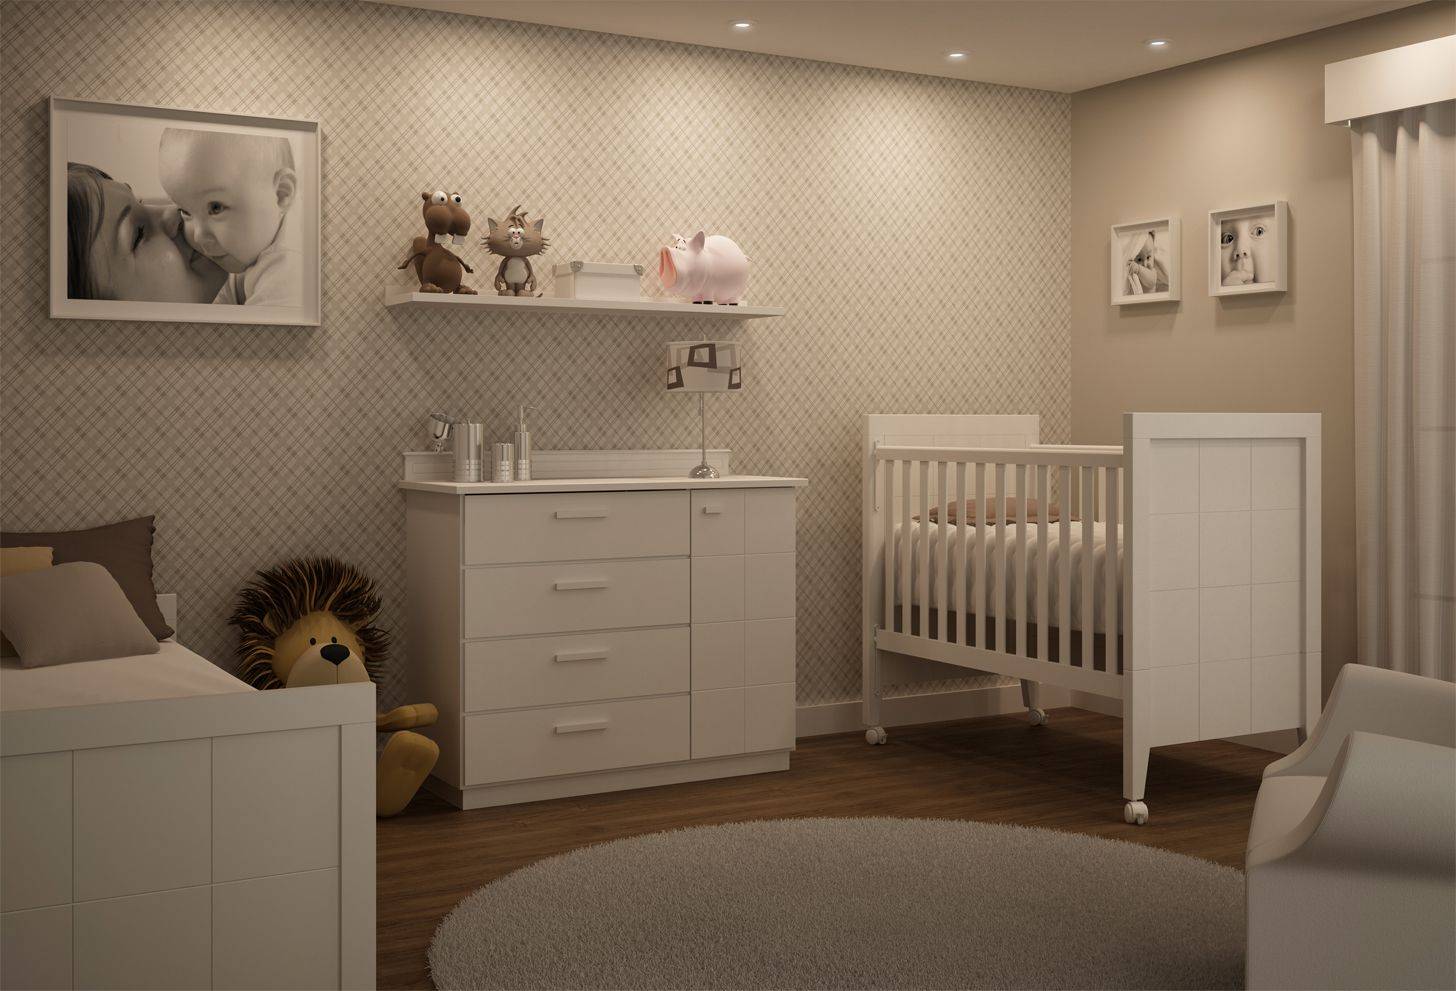 Baby bedroom. Комната для новорожденного. Интерьер комнаты для новорожденного. Детские комнаты для новорожденных. Комната для мальчика в бежевых тонах.